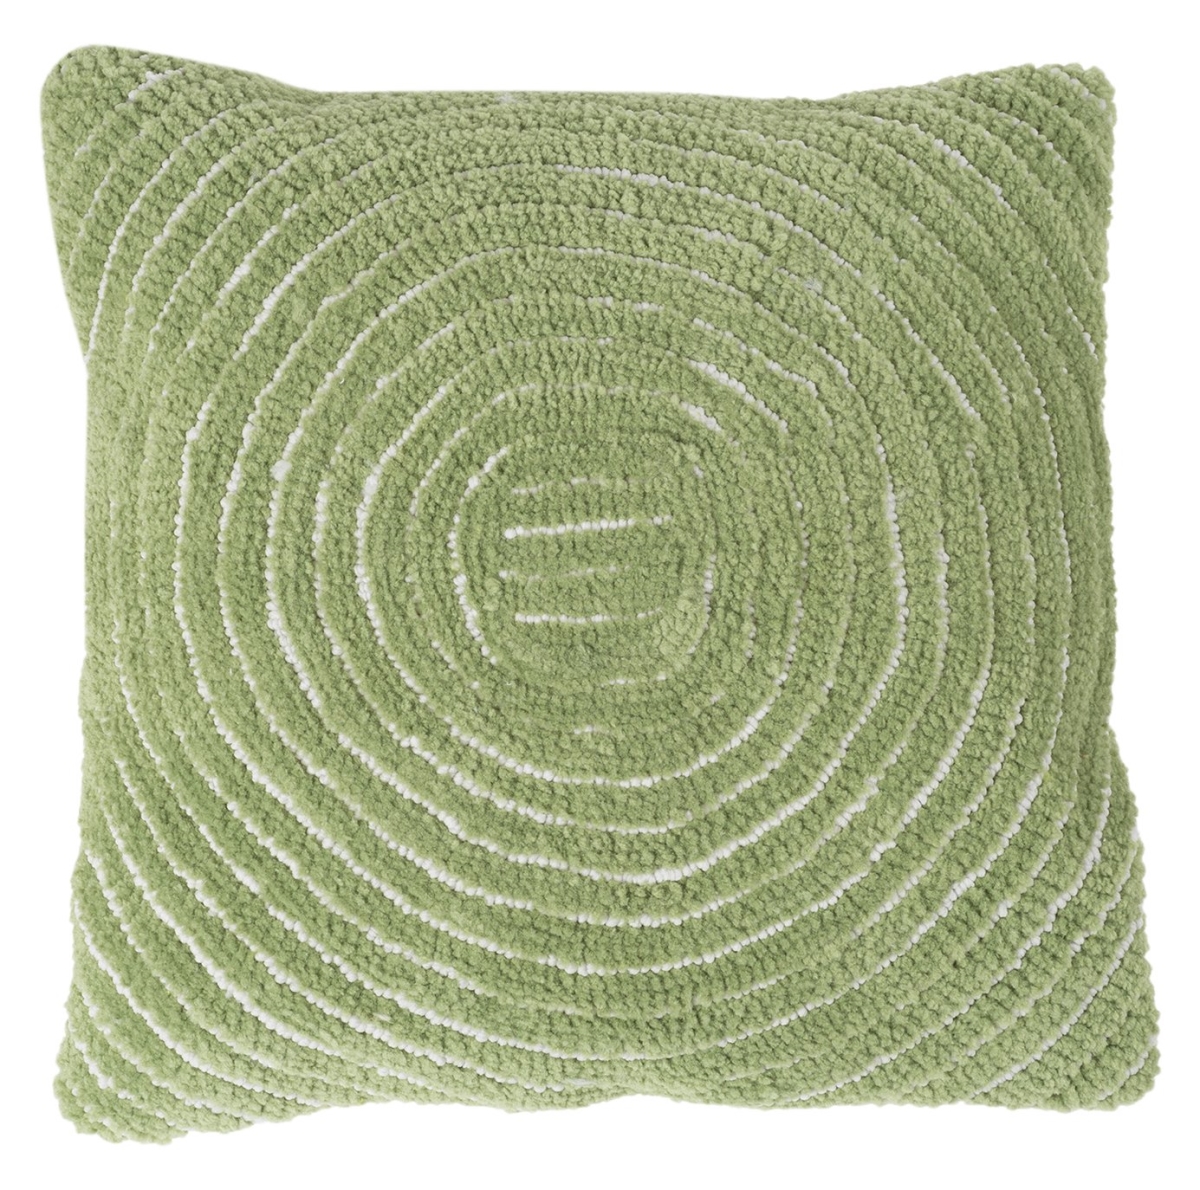 66a-27427 Modern Throw Pillow, Leaf Green